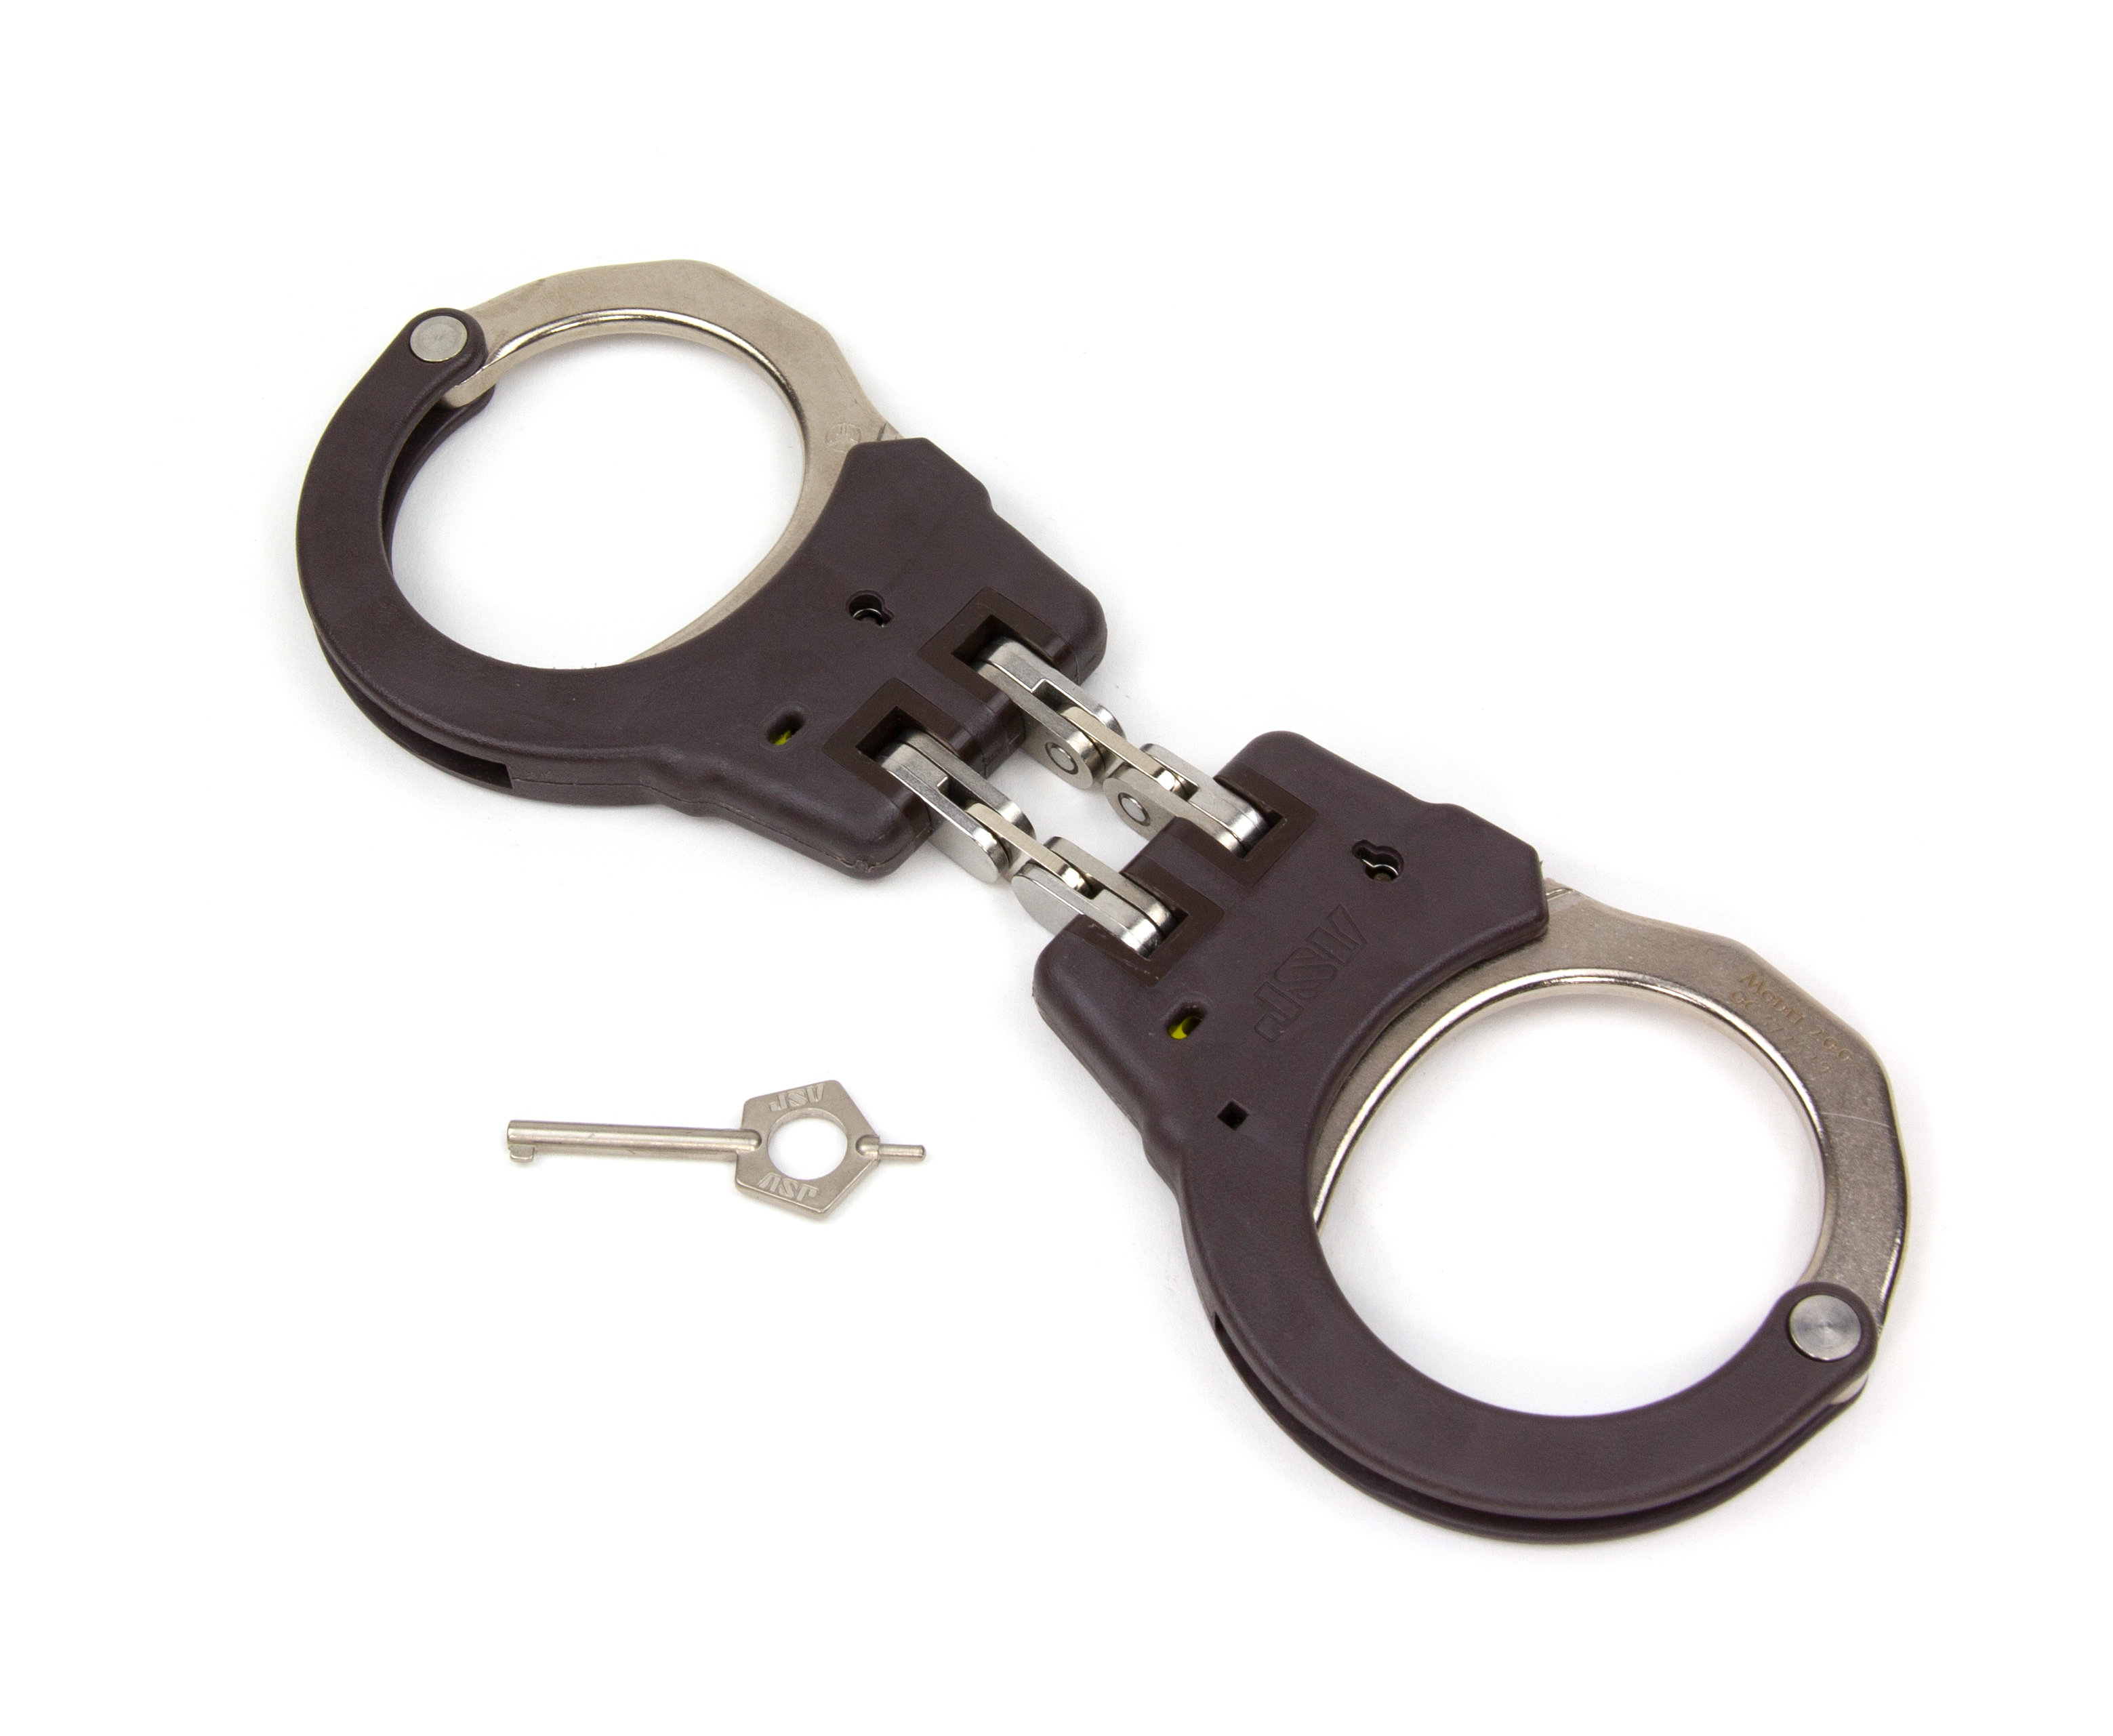 ASP Identifier Hinge Flex Cuffs Brown - 56115 / Model 200 Braun